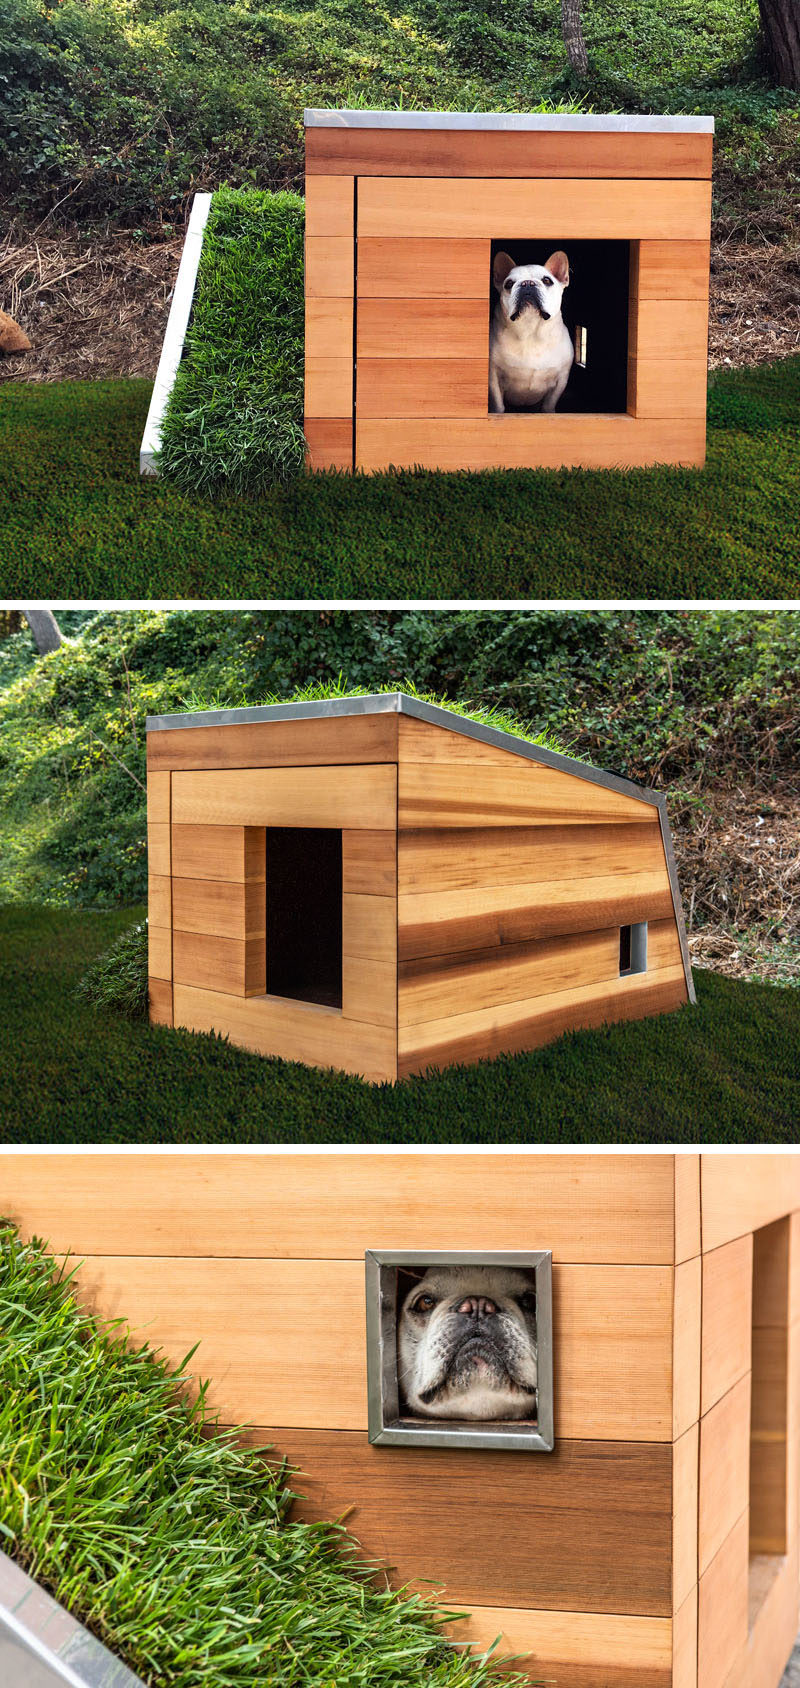  Студия Schicketanz спроектировала современный Дом мечты для собак с деревянной конструкцией, хранилищем для игрушек и закусок, смесителем, активируемым движением, и вентилятором на солнечной энергии. #DogHouse #ModernDogHouse # Архитектура # Дизайн 